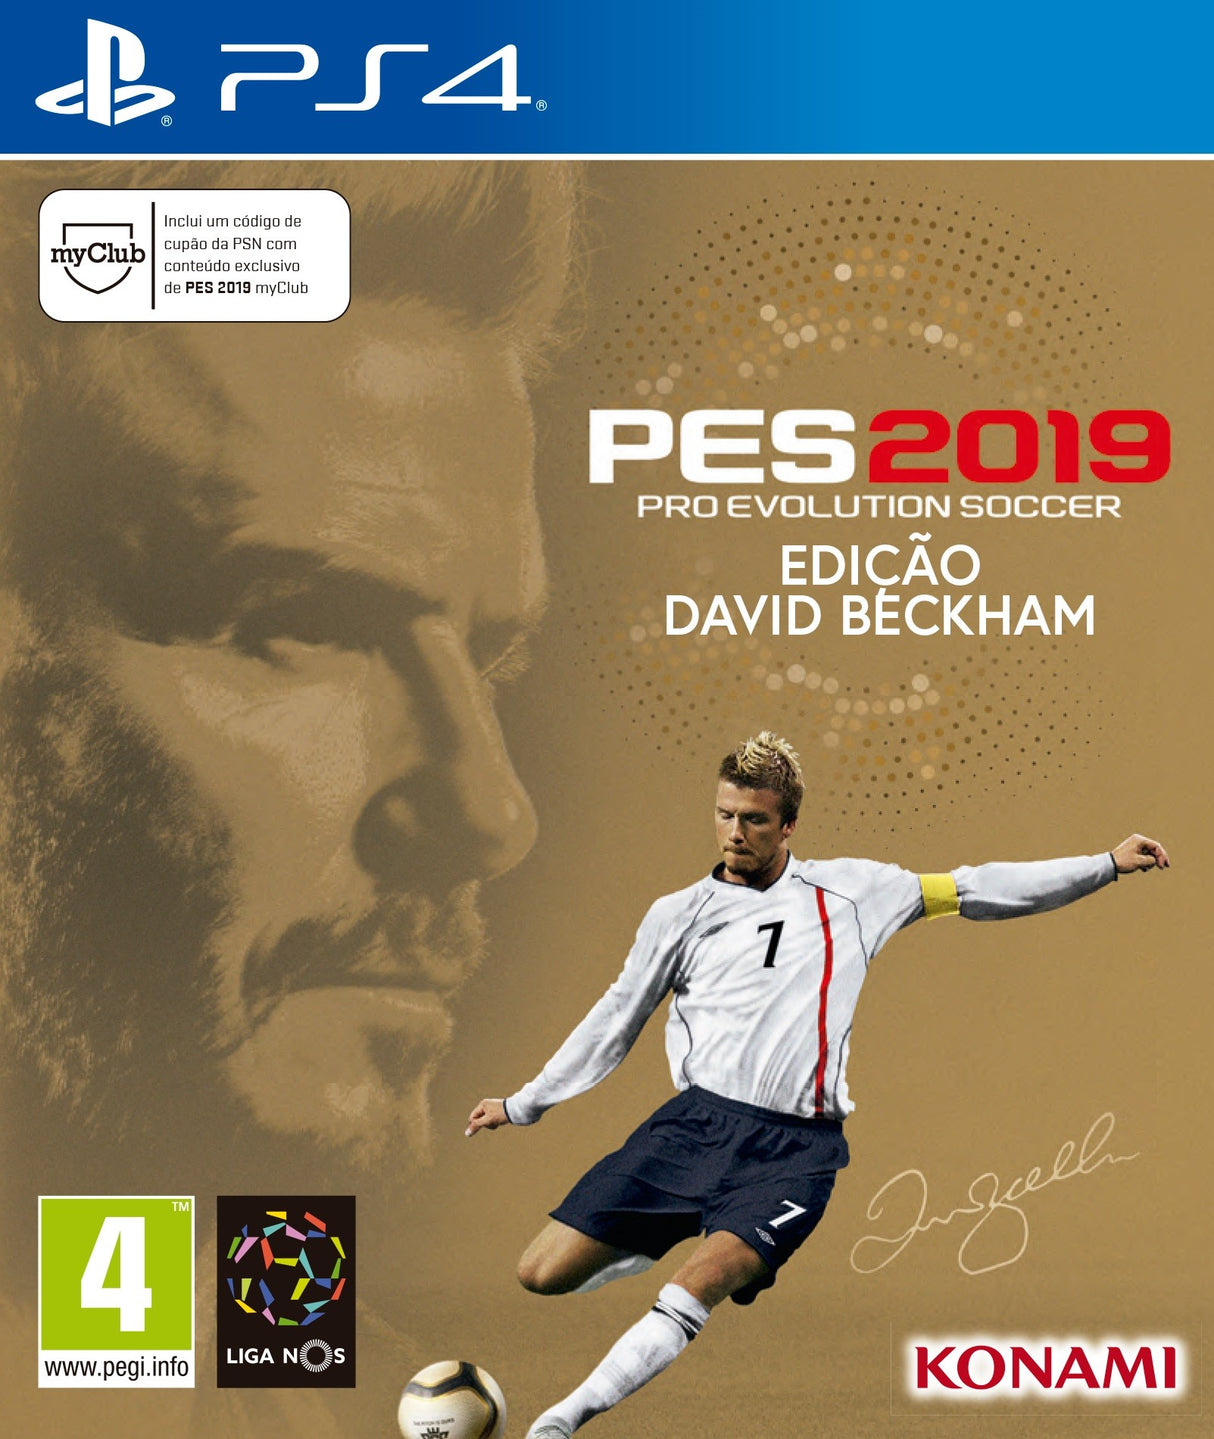 PES 2019 Edição David Beckham - Pro Evolution Soccer - PS4